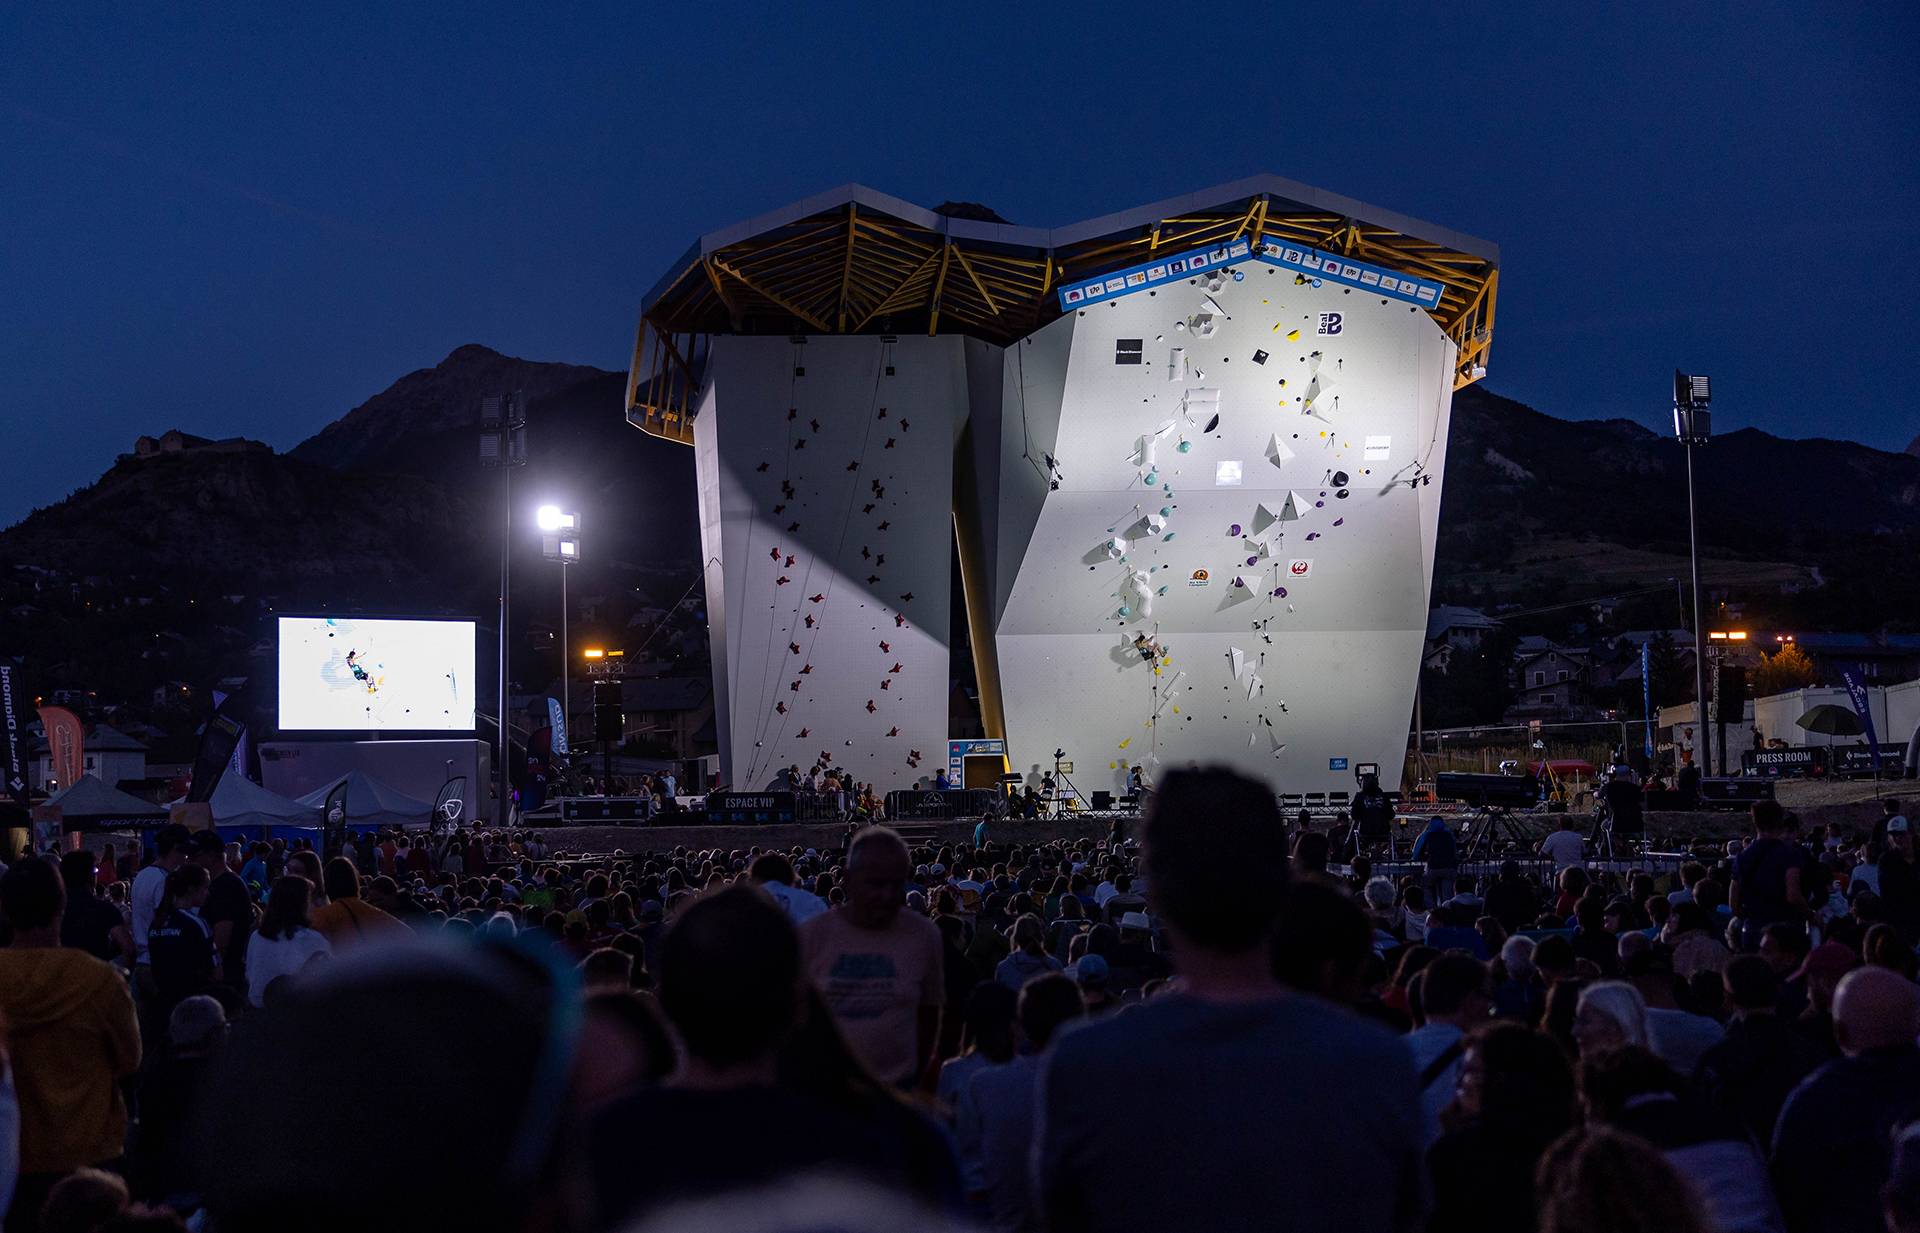 Le mur d'escalade de Briançon pourrait un jour accueillir les Championnats  du monde - Mon séjour en montagne